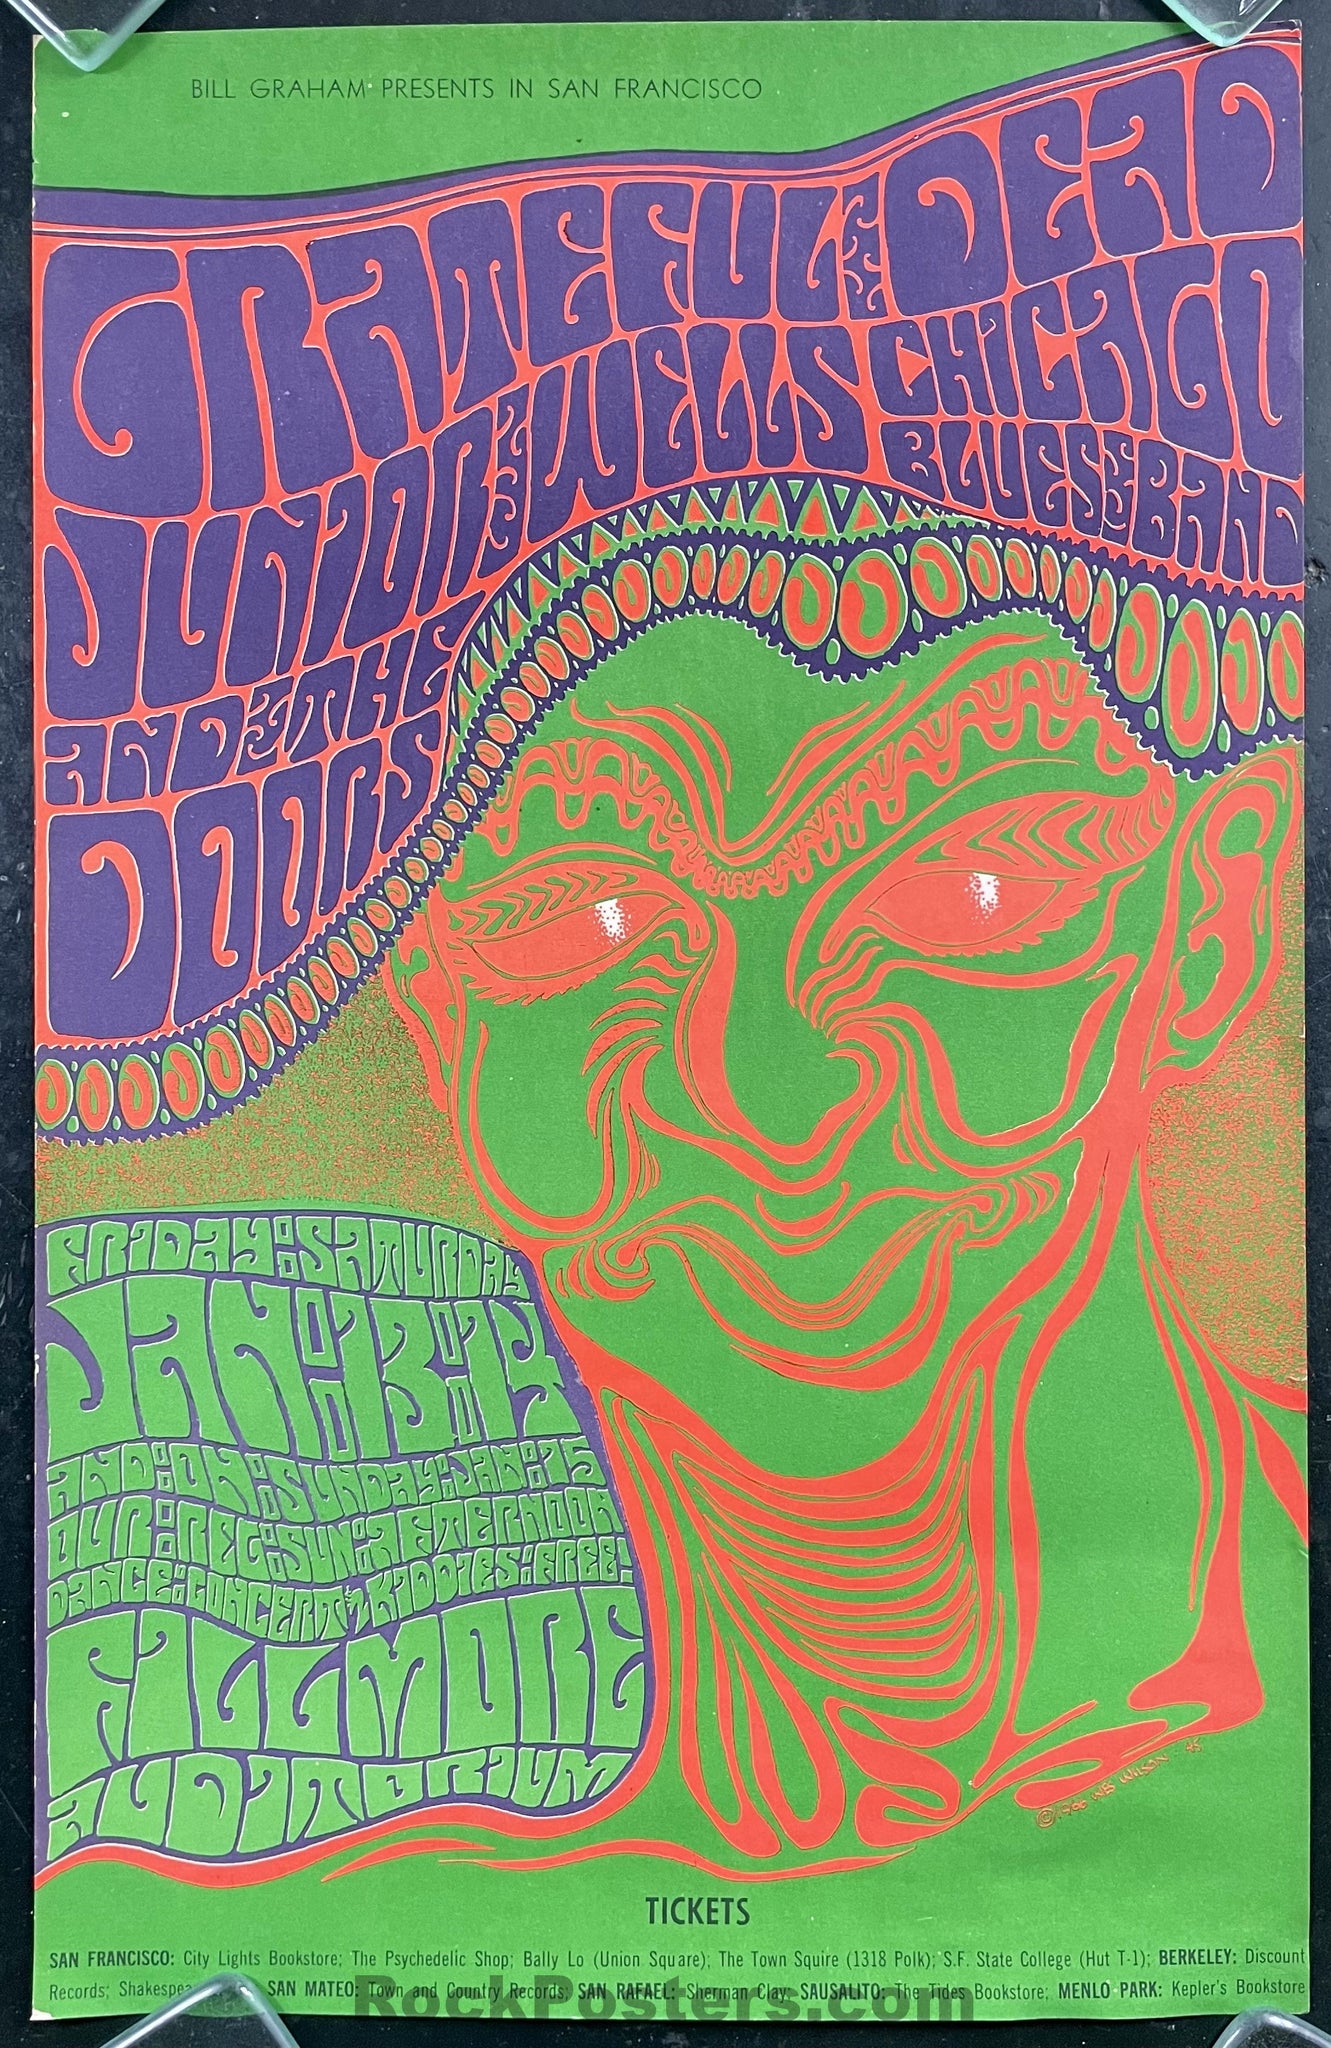 AUCTION - BG-45 - Grateful Dead/Doors - Wes Wilson - Fillmore Auditorium - 1967 Poster - Excellent